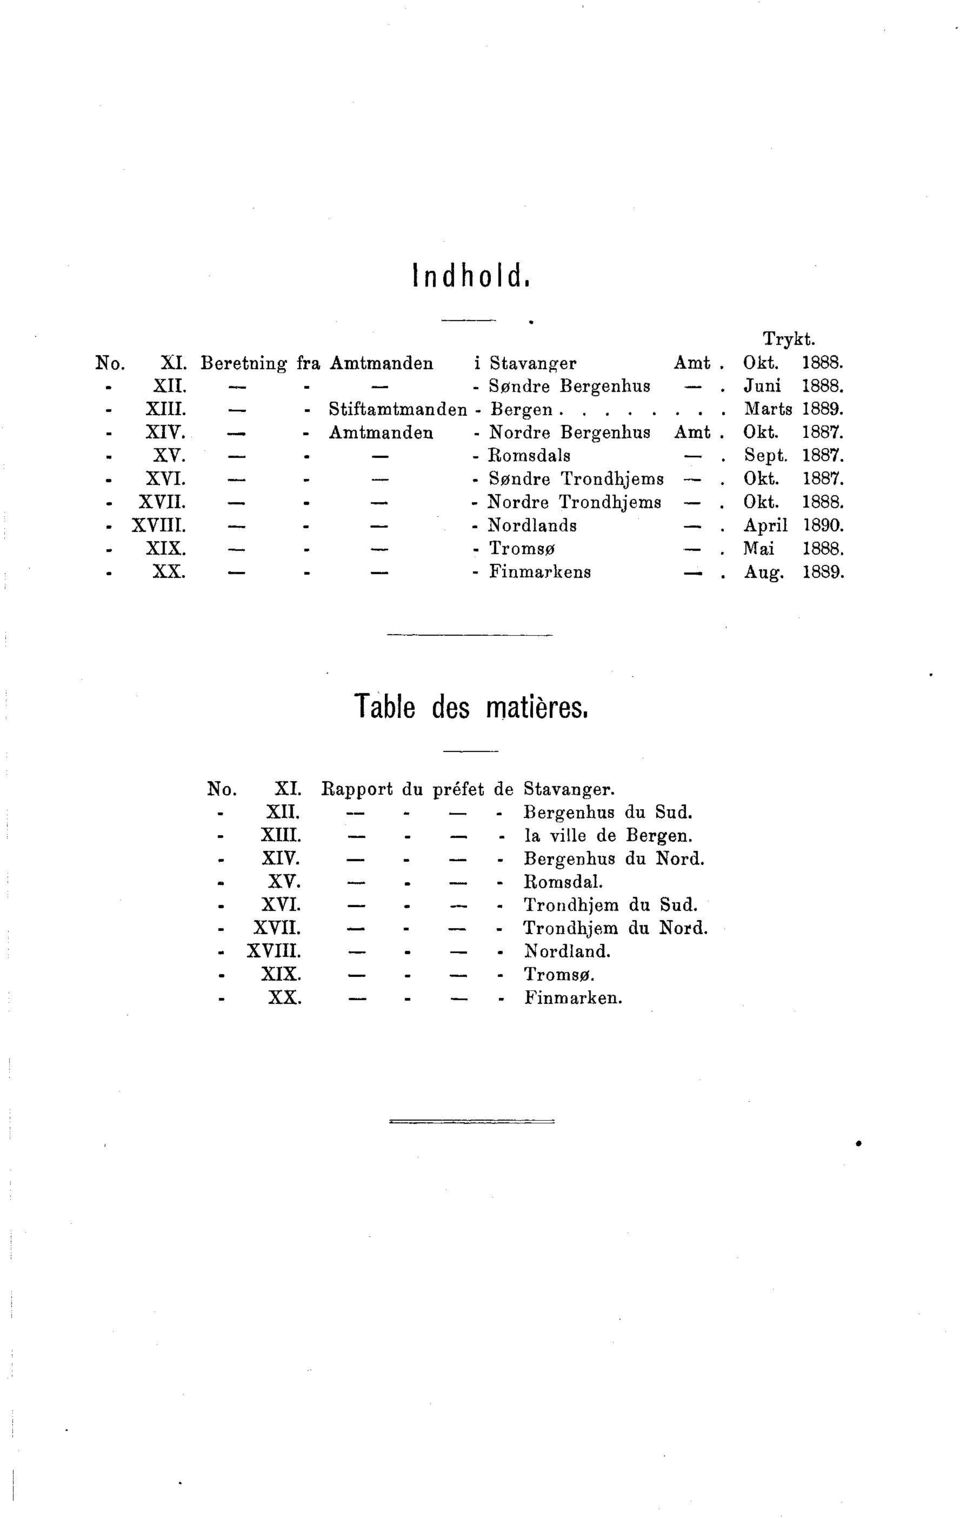 - - Nordlands April 1890. - XIX. - - Tromsø Mai 1888. - XX. - - Finmarkens Aug. 1889. Table des matières. No. XI. Rapport du préfet de Stavanger. - XII.._... - Bergenhus du Sud.